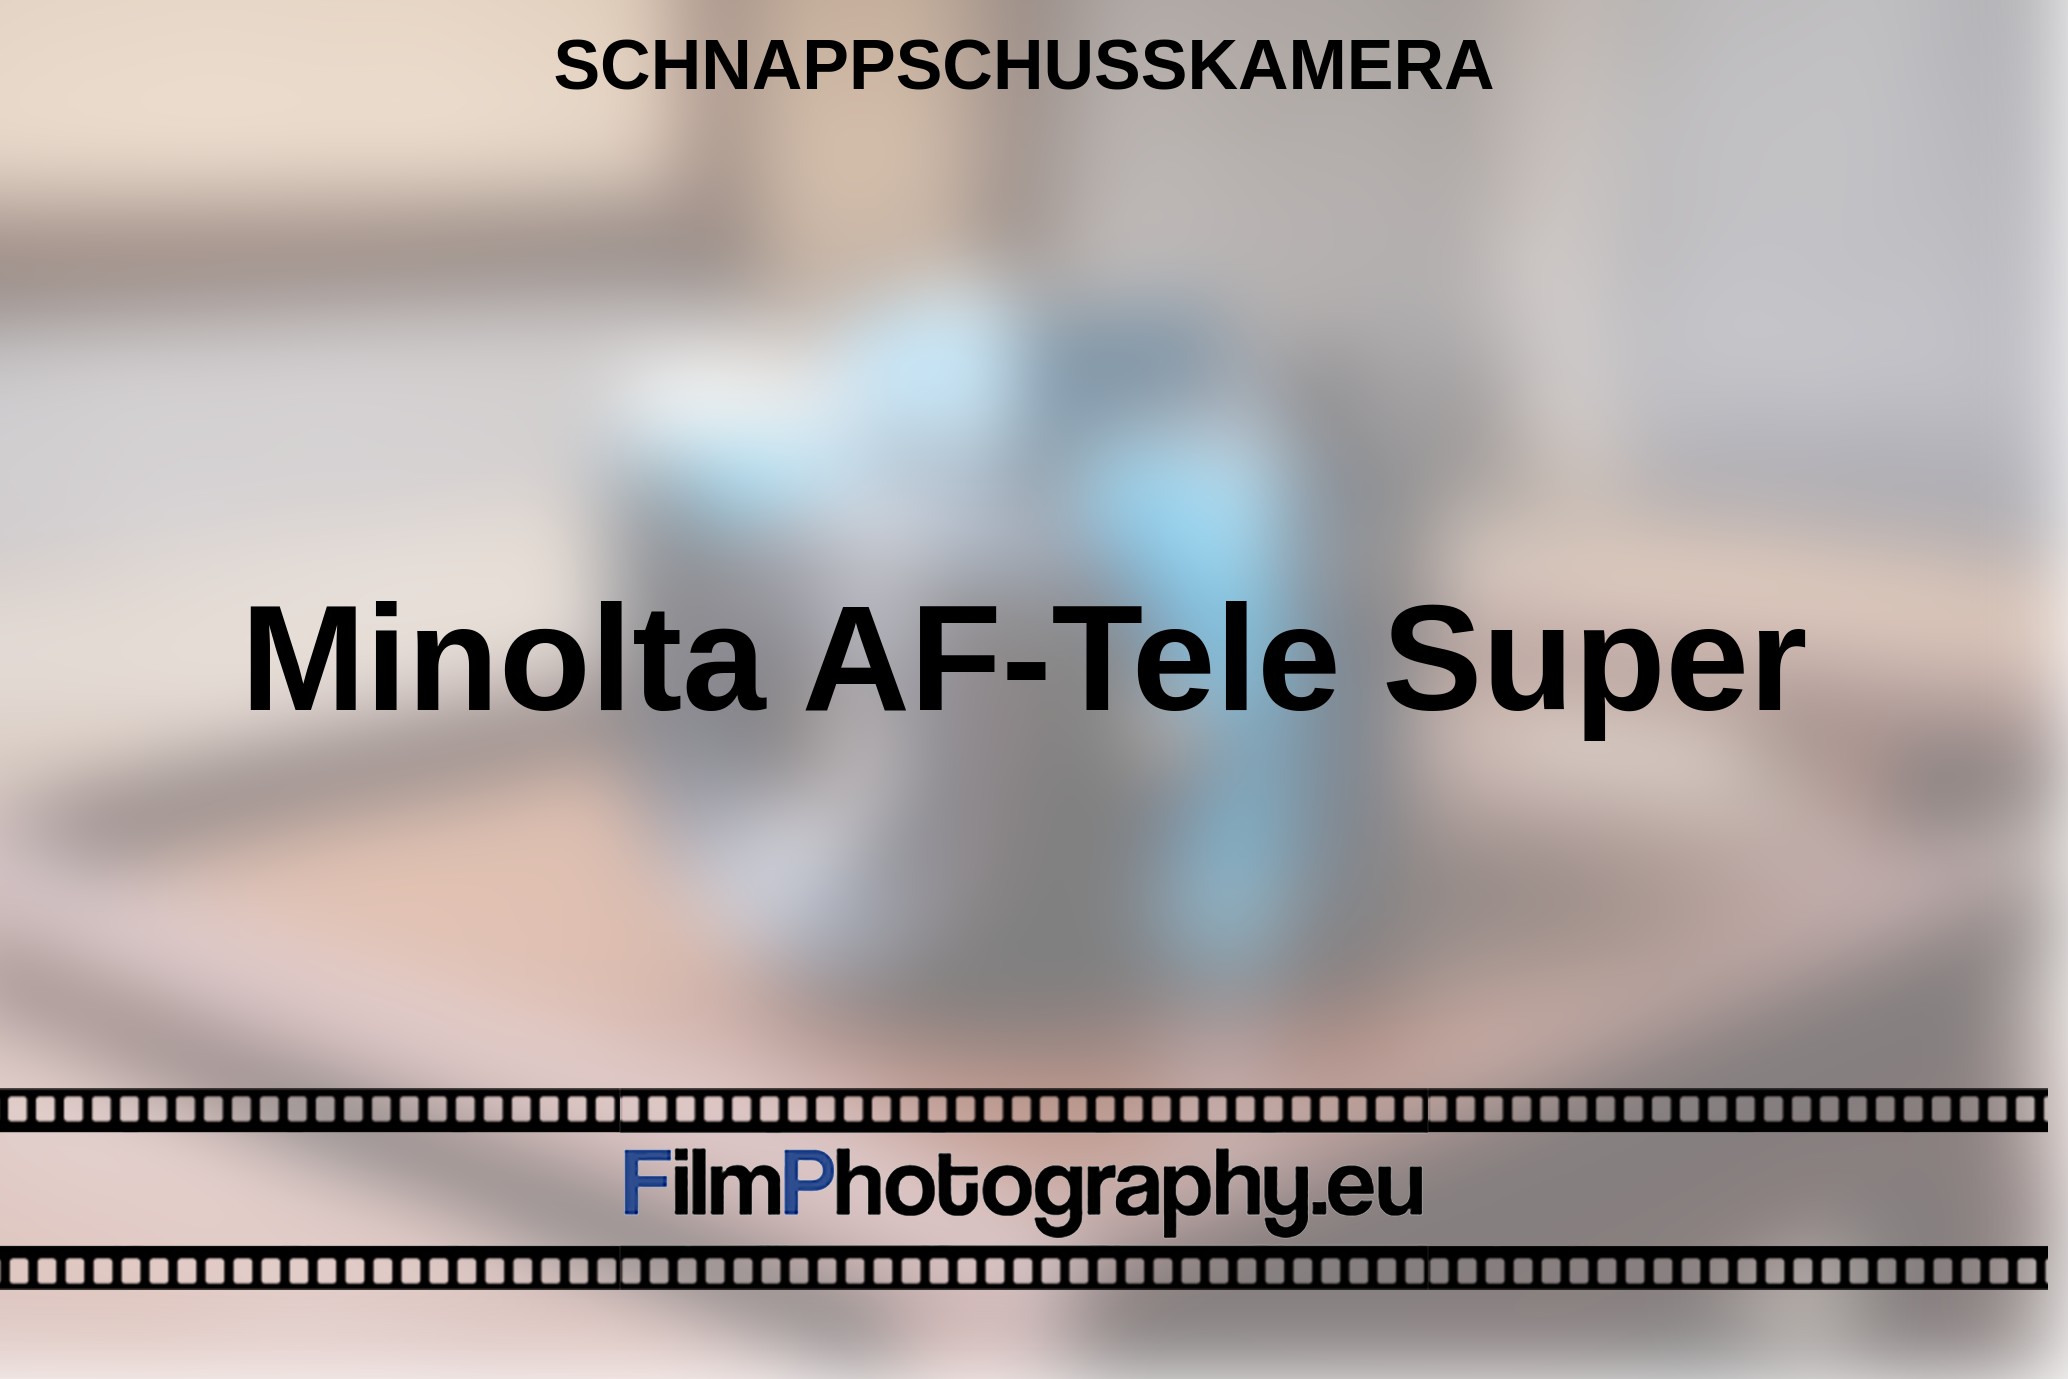 Minolta-AF-Tele-Super-Schnappschusskamera-bnv.jpg